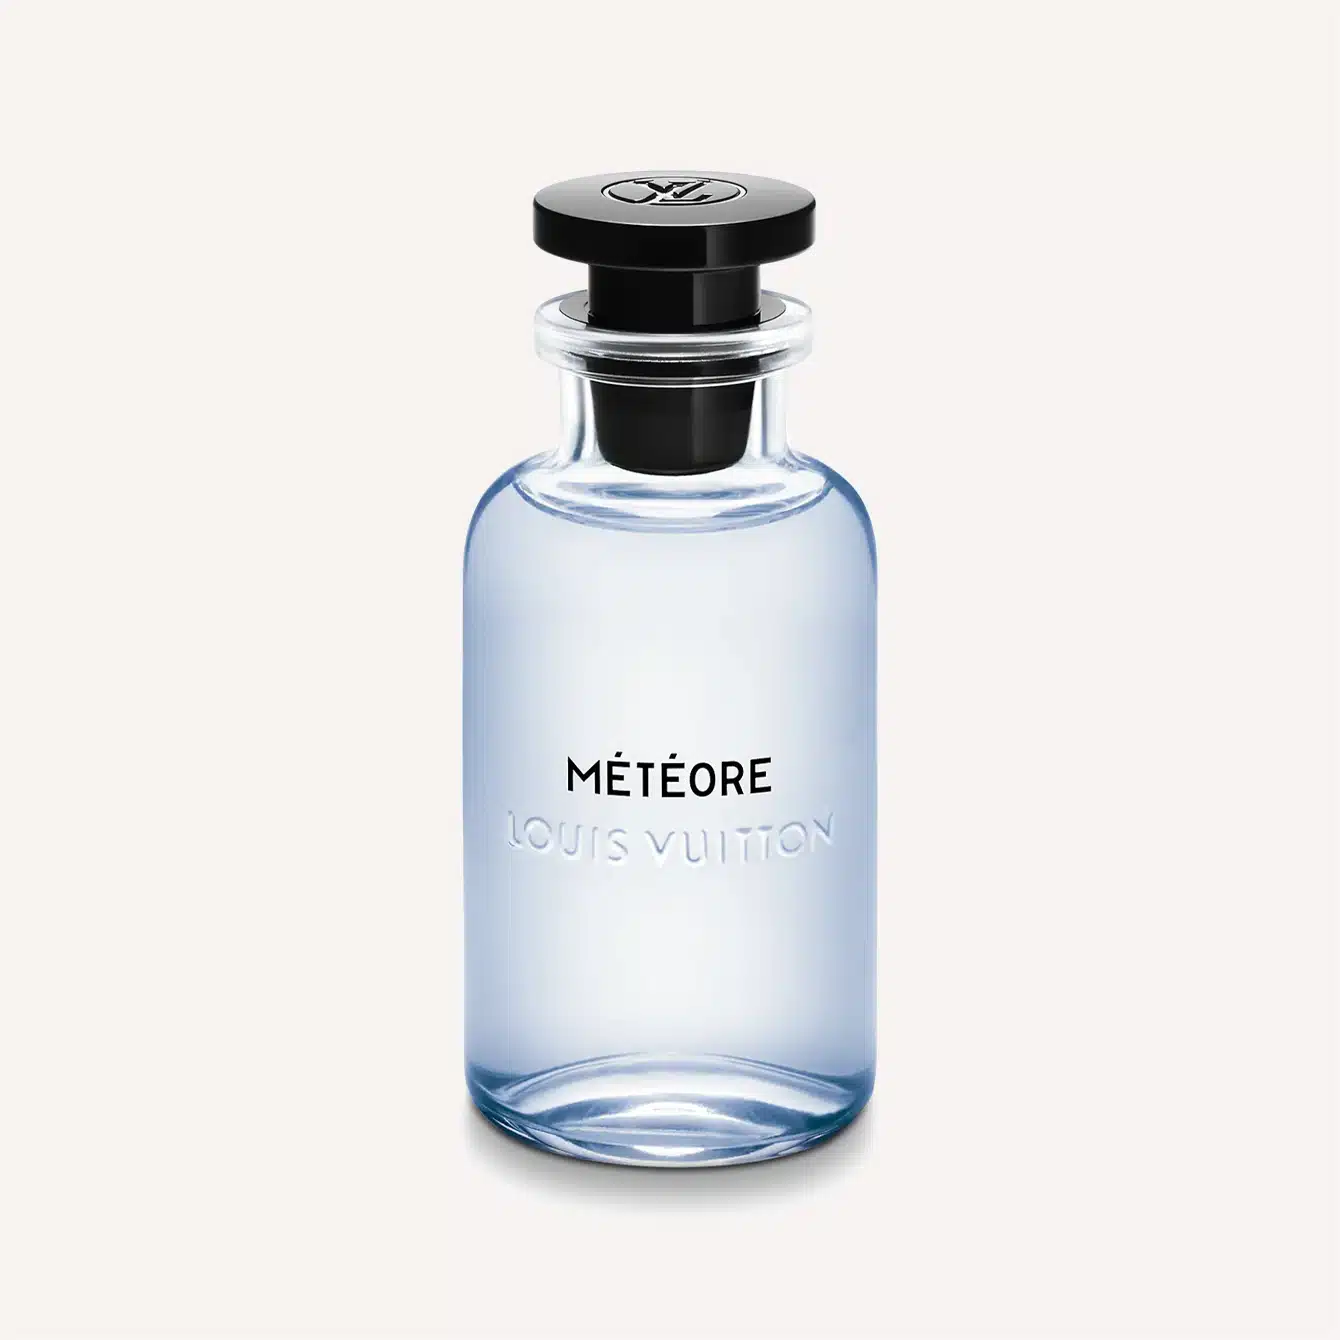 Sun song louis Vuitton  Top fragrance, Sun song, Floral fragrance